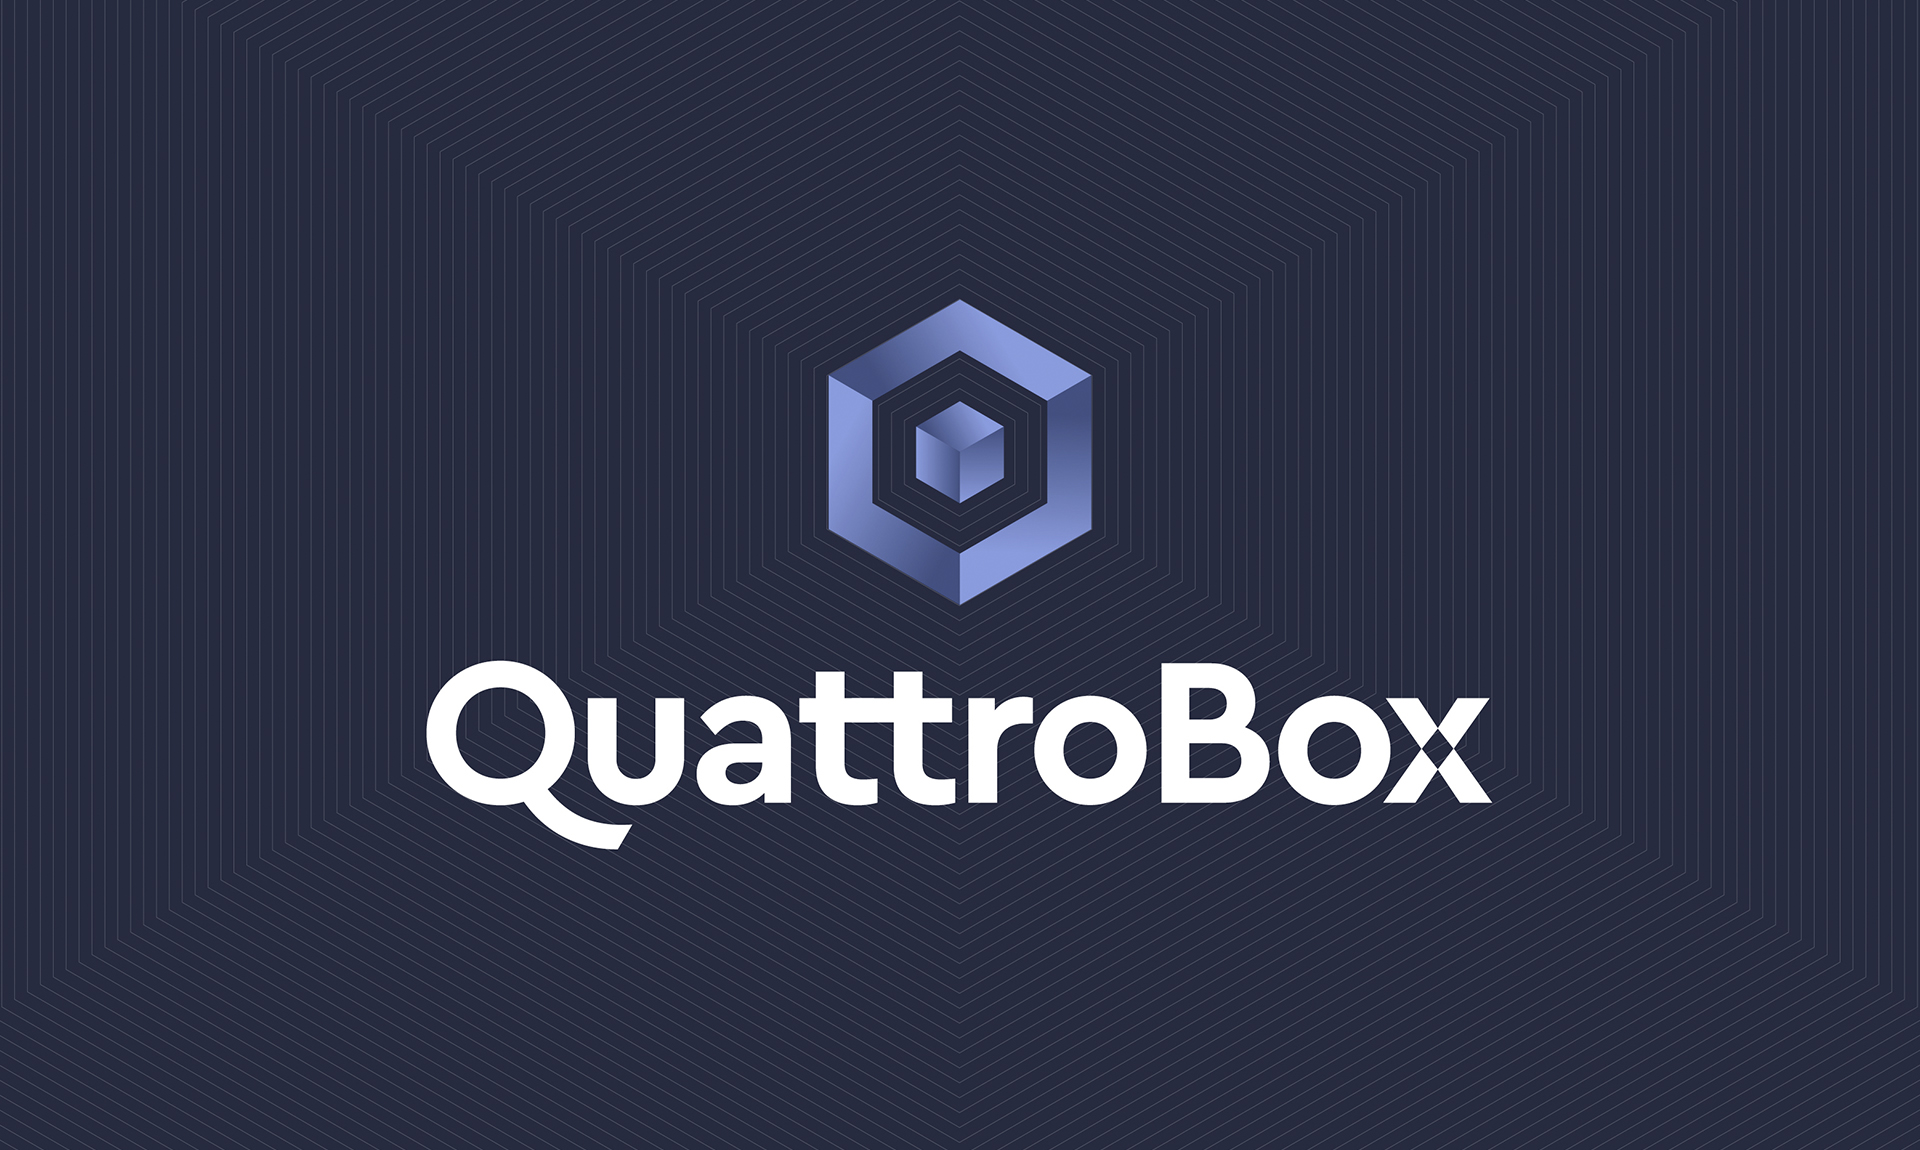 QuattroBox